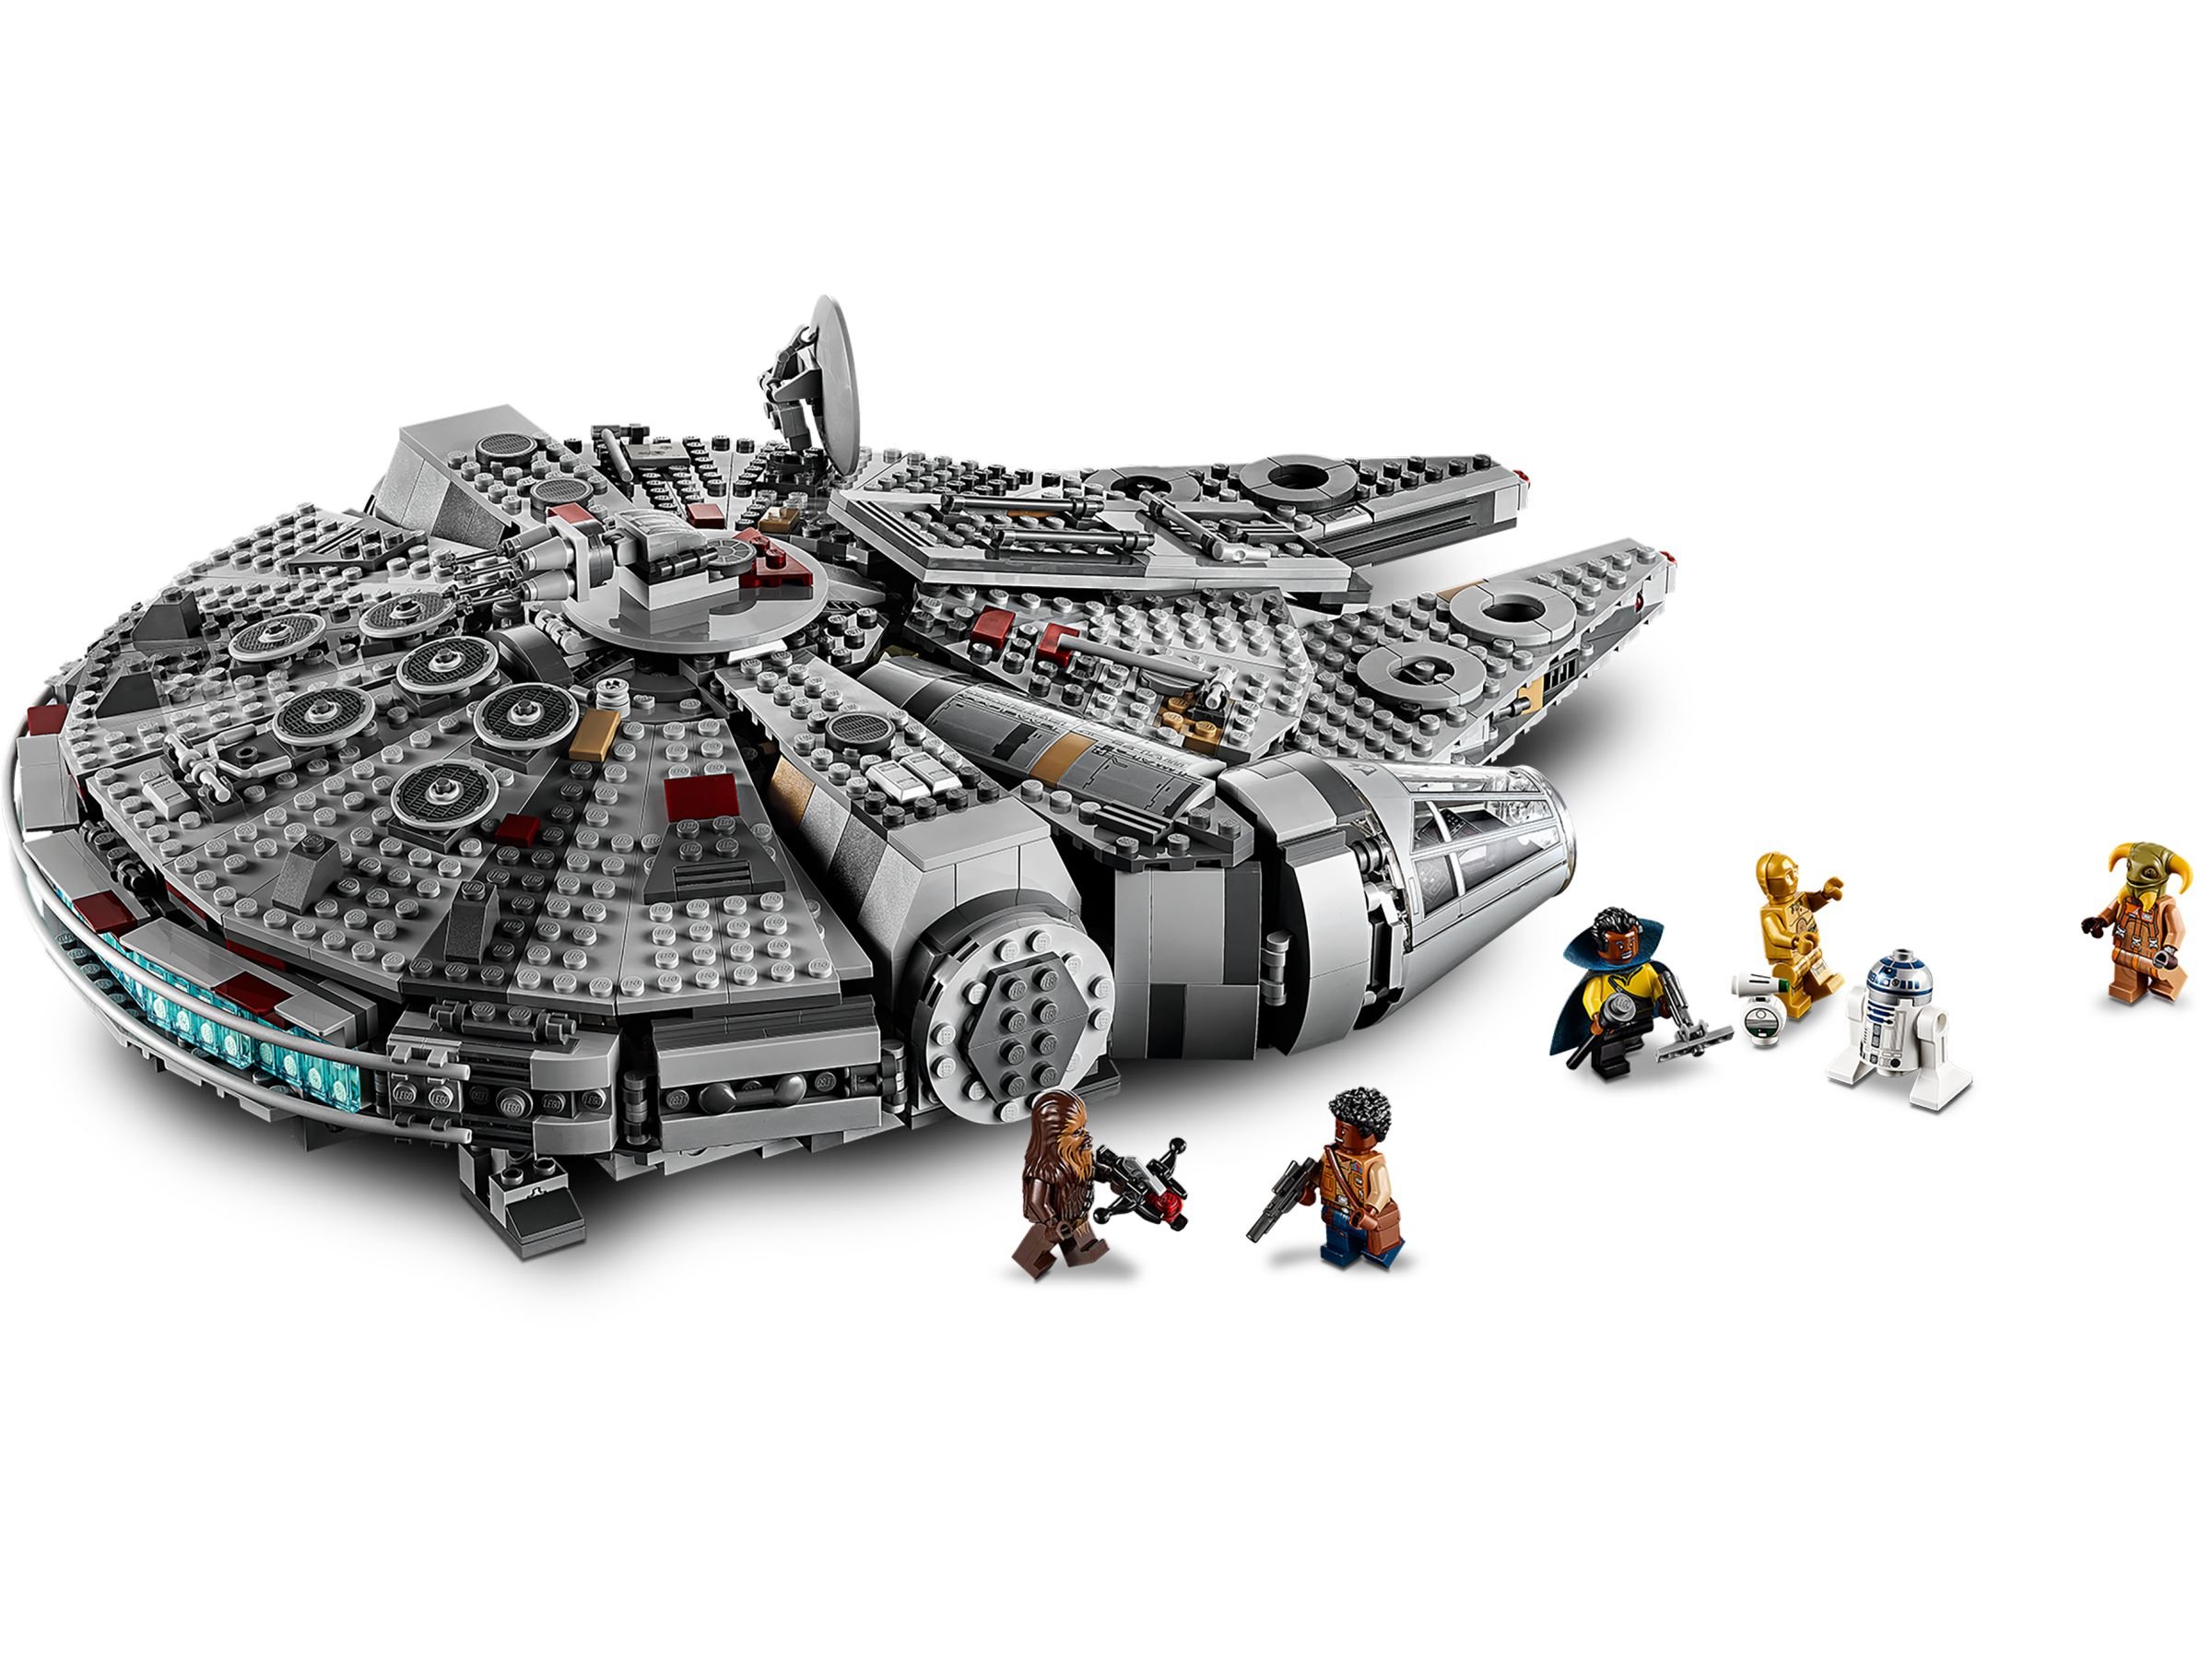 LEGO Star Wars 75257 Millennium Falcon™ LEGO_75257_alt3.jpg